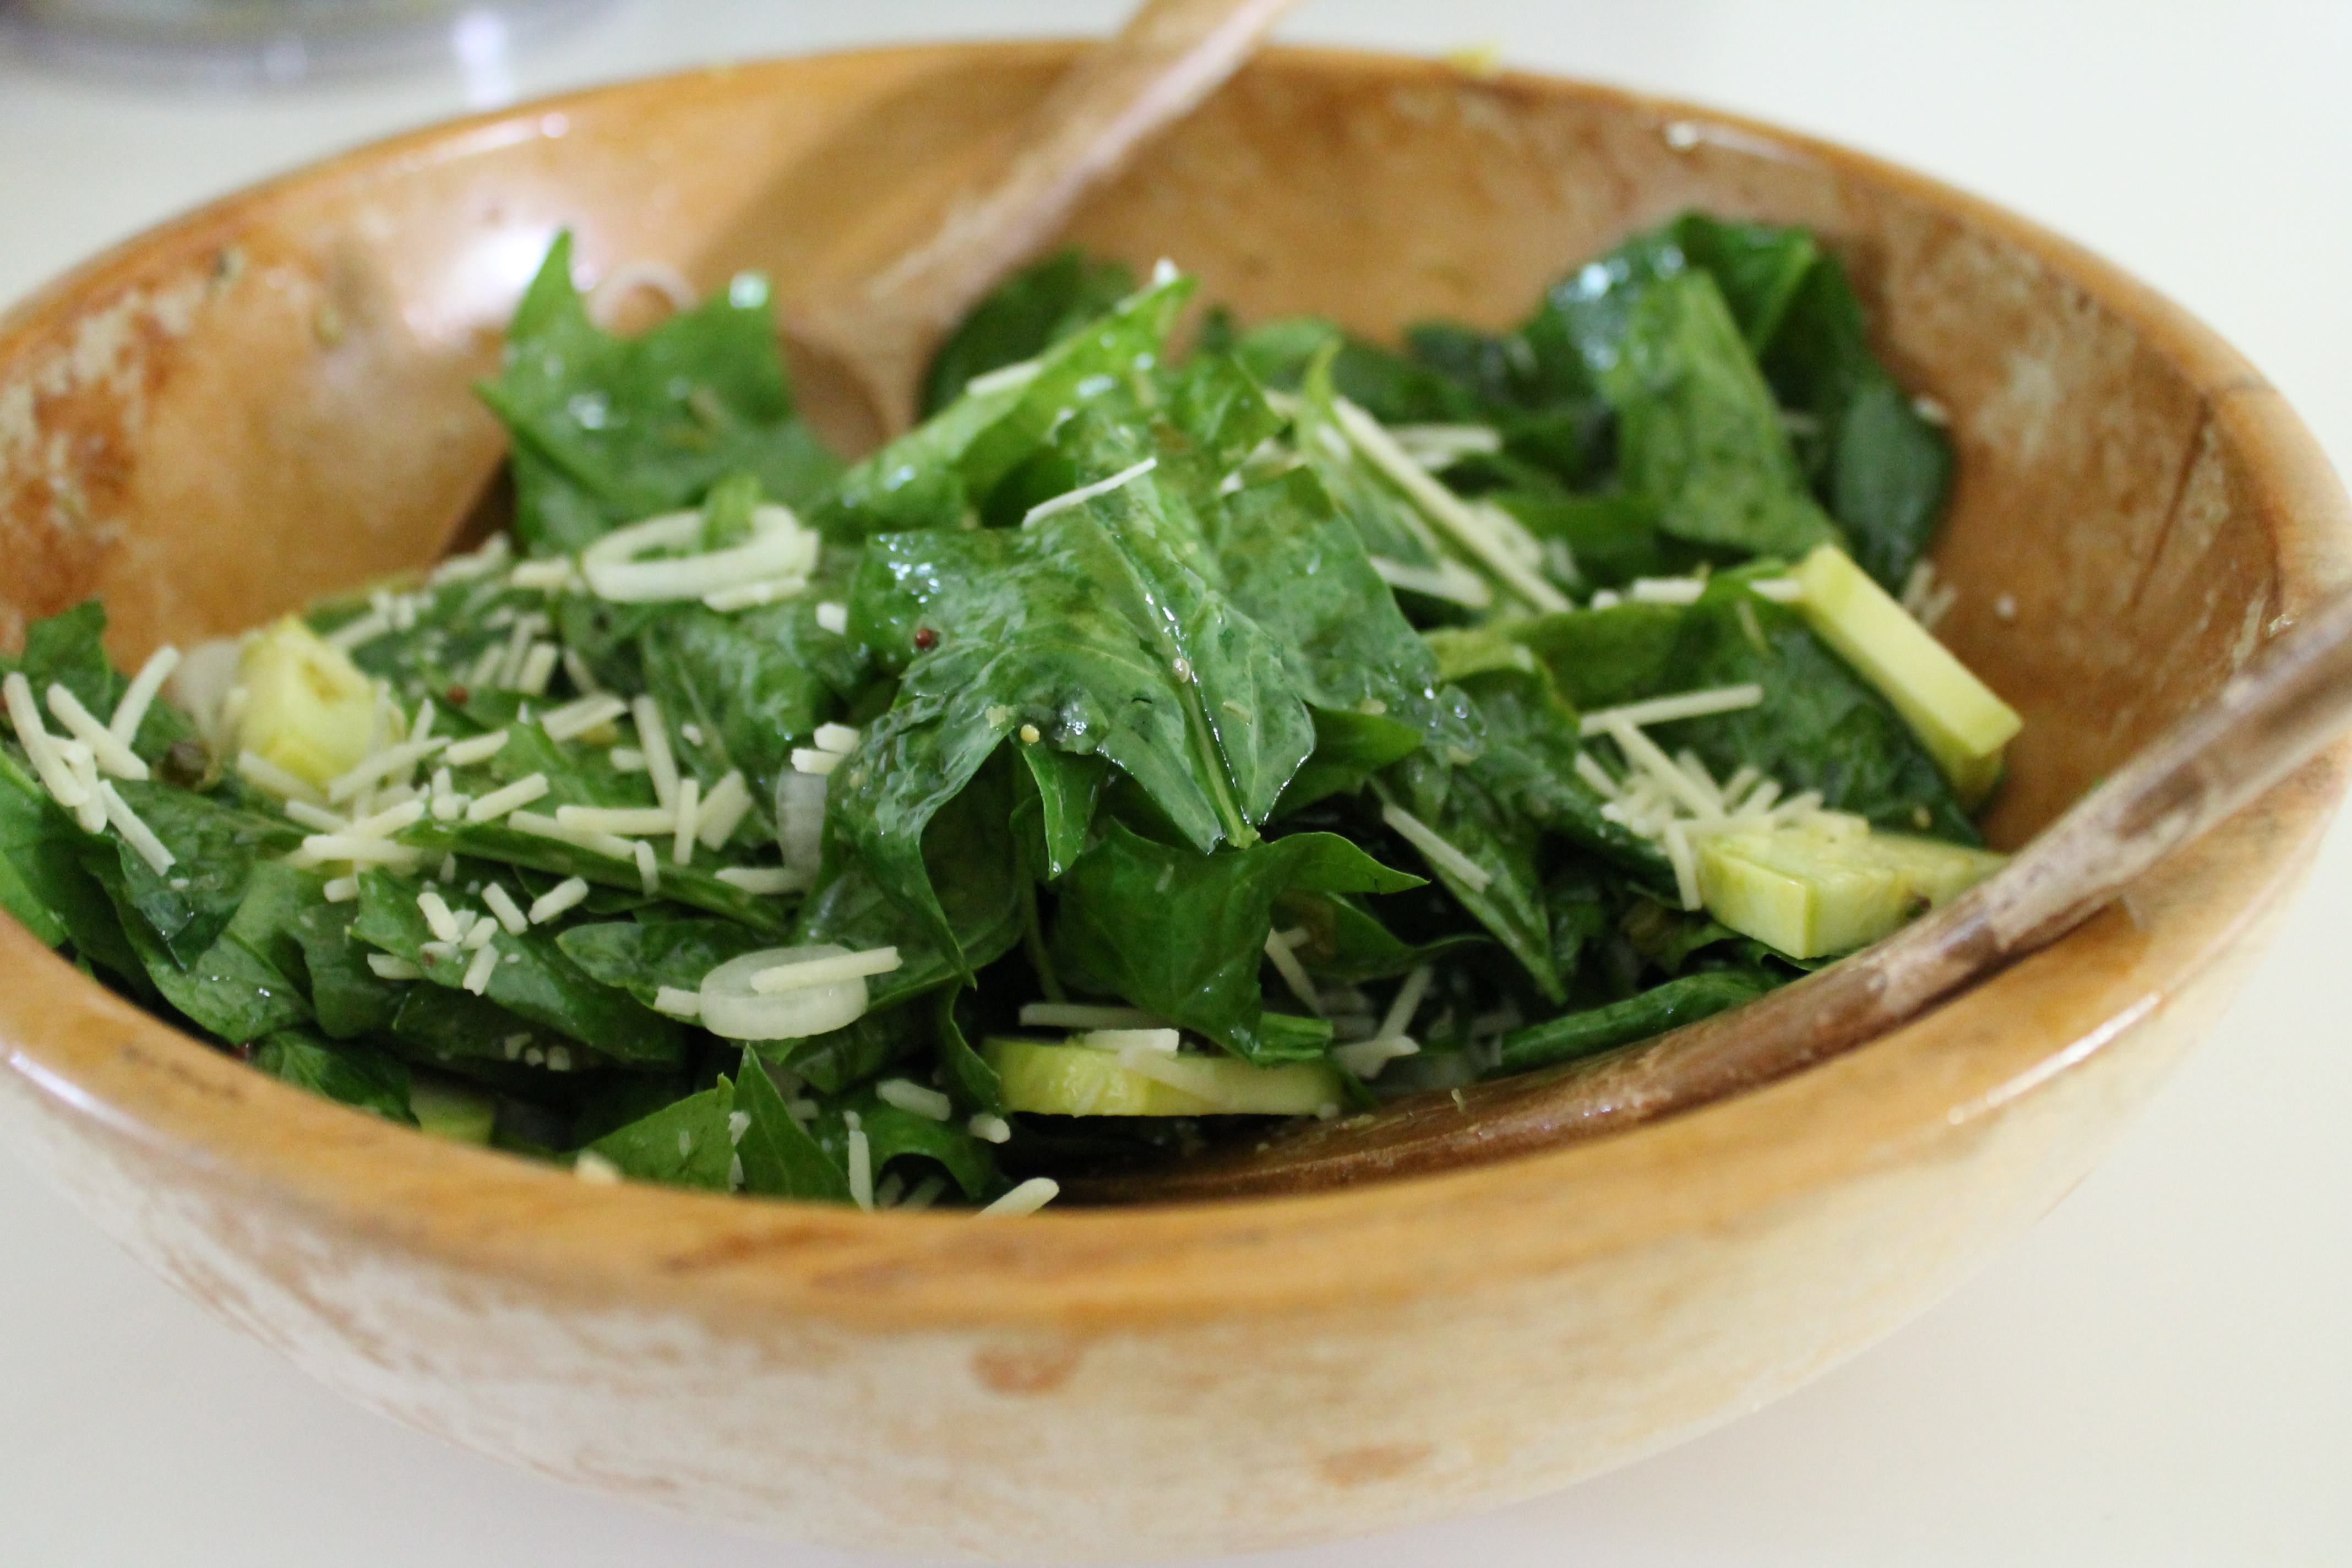 Loose Leaf Salad with Warm Garlic Scape Vinaigrette